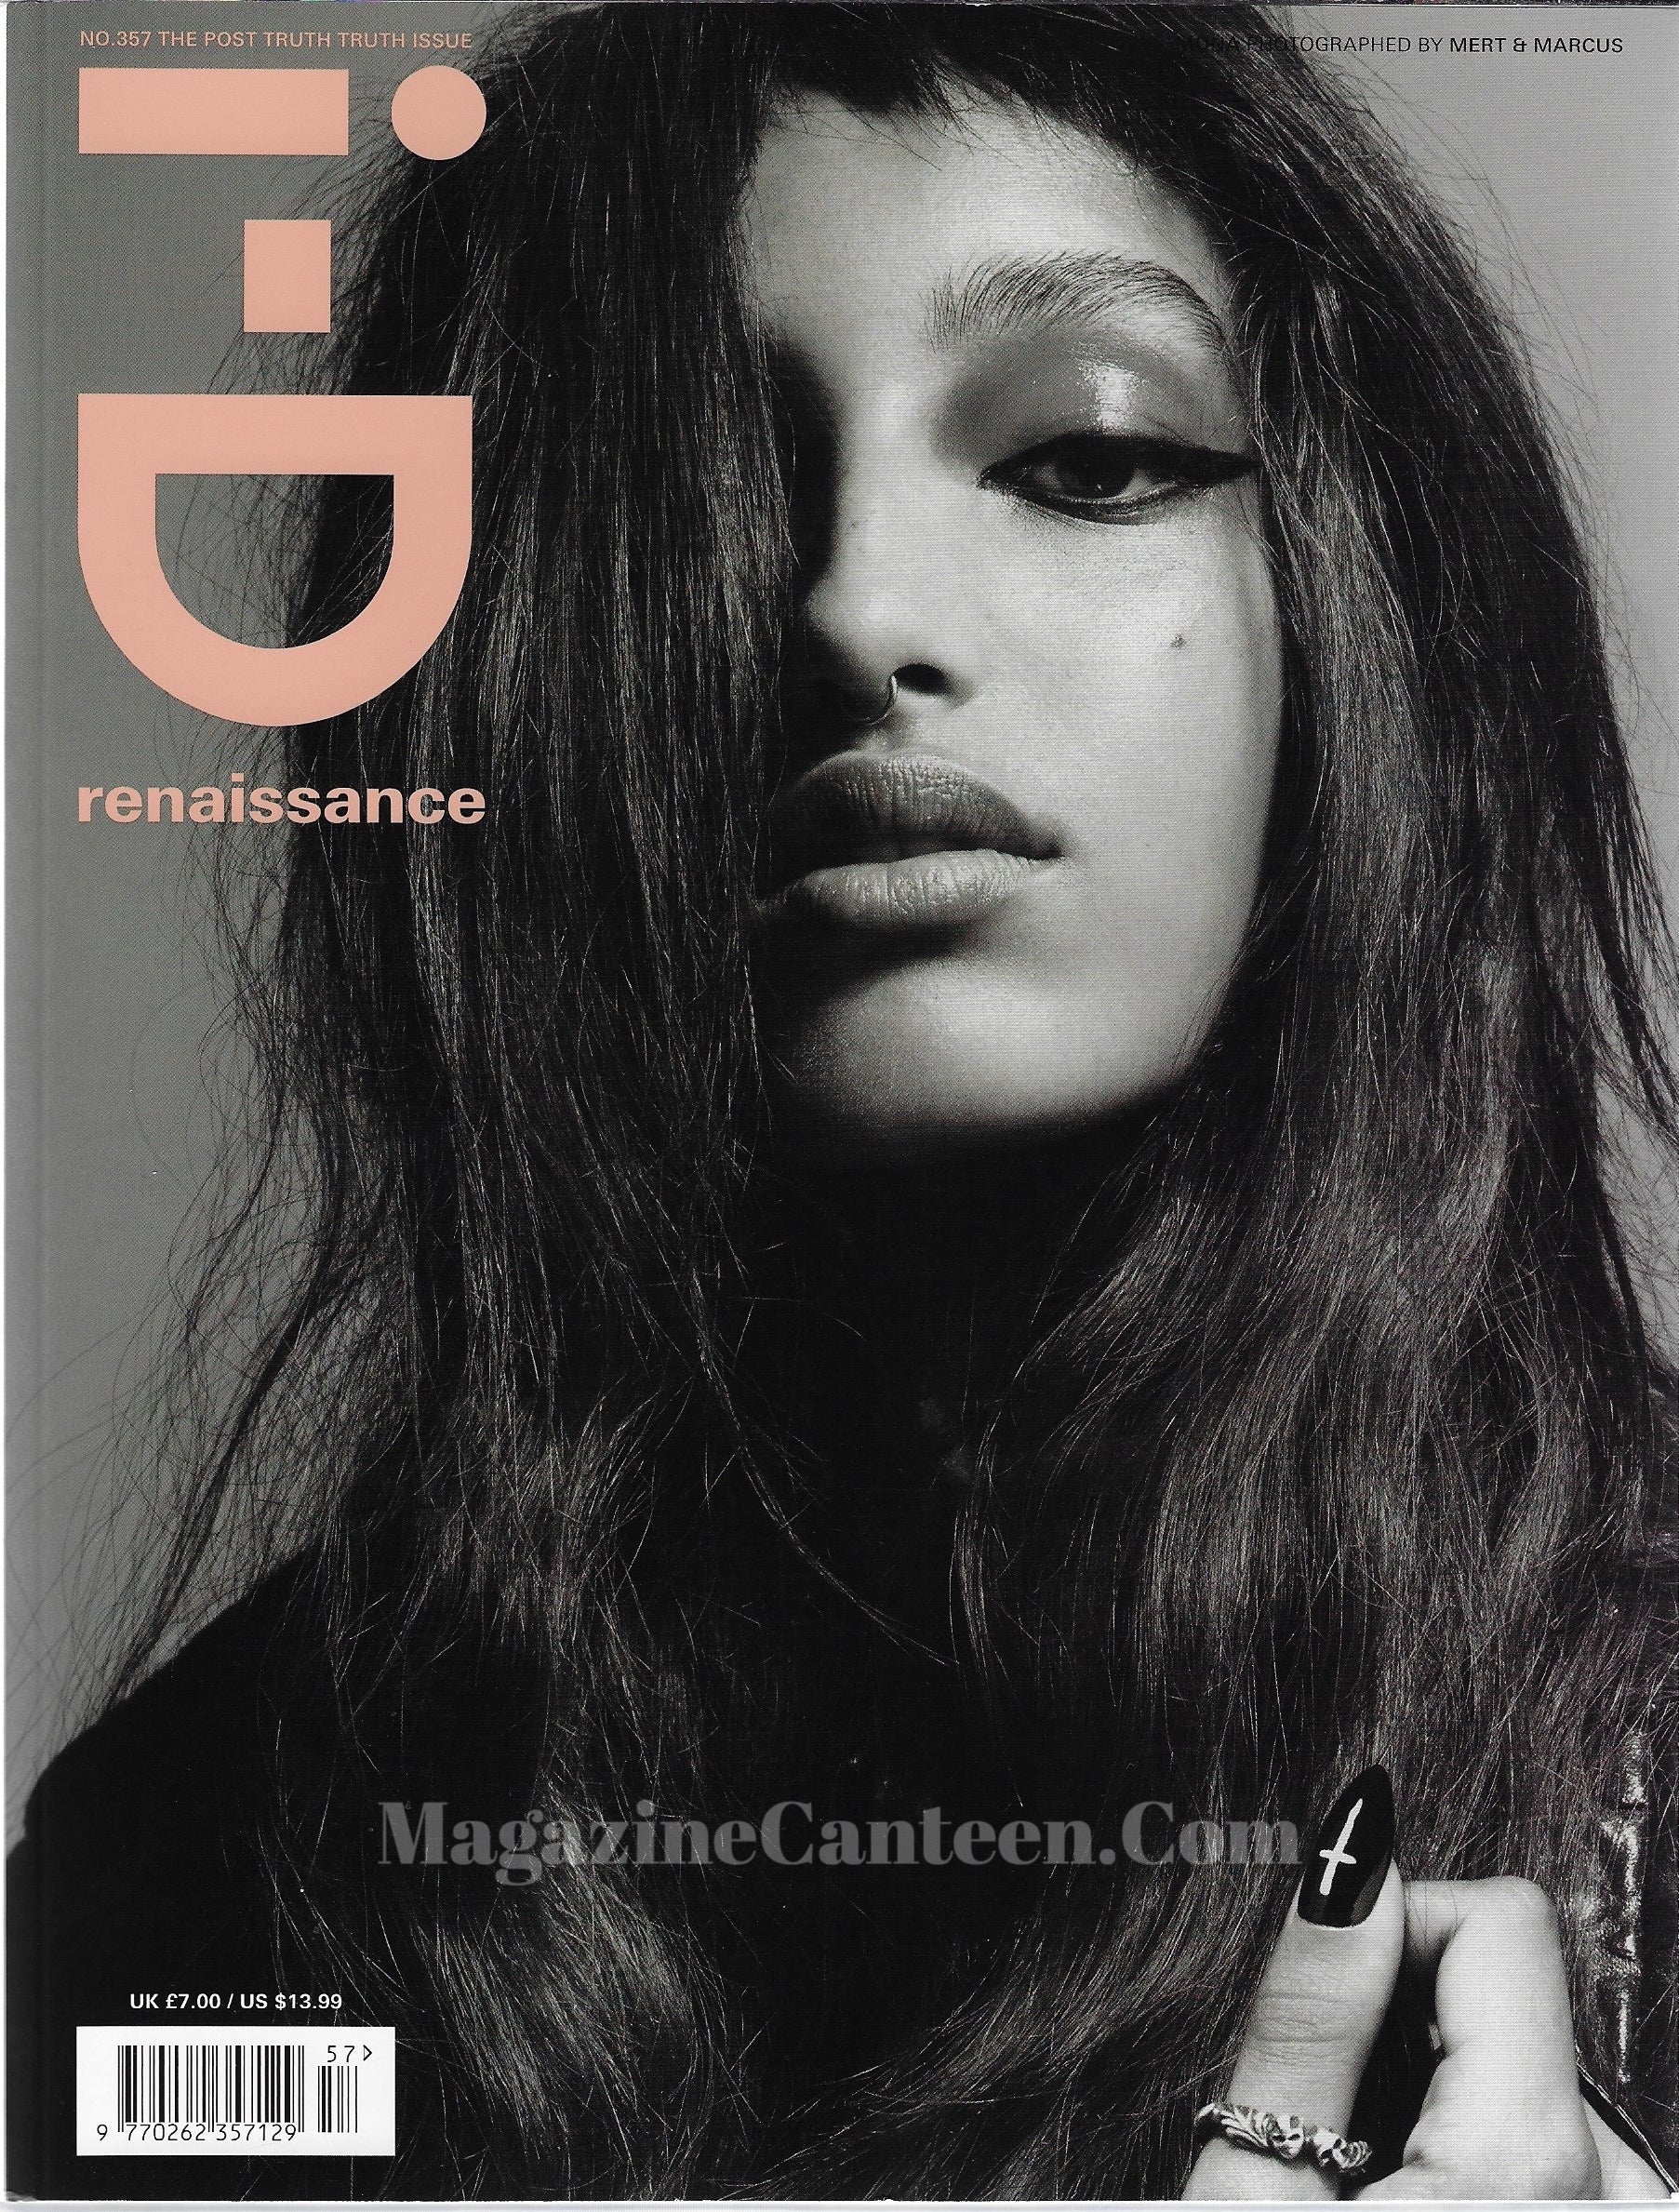 I-D Magazine 357 - Mona Tougaard 2019